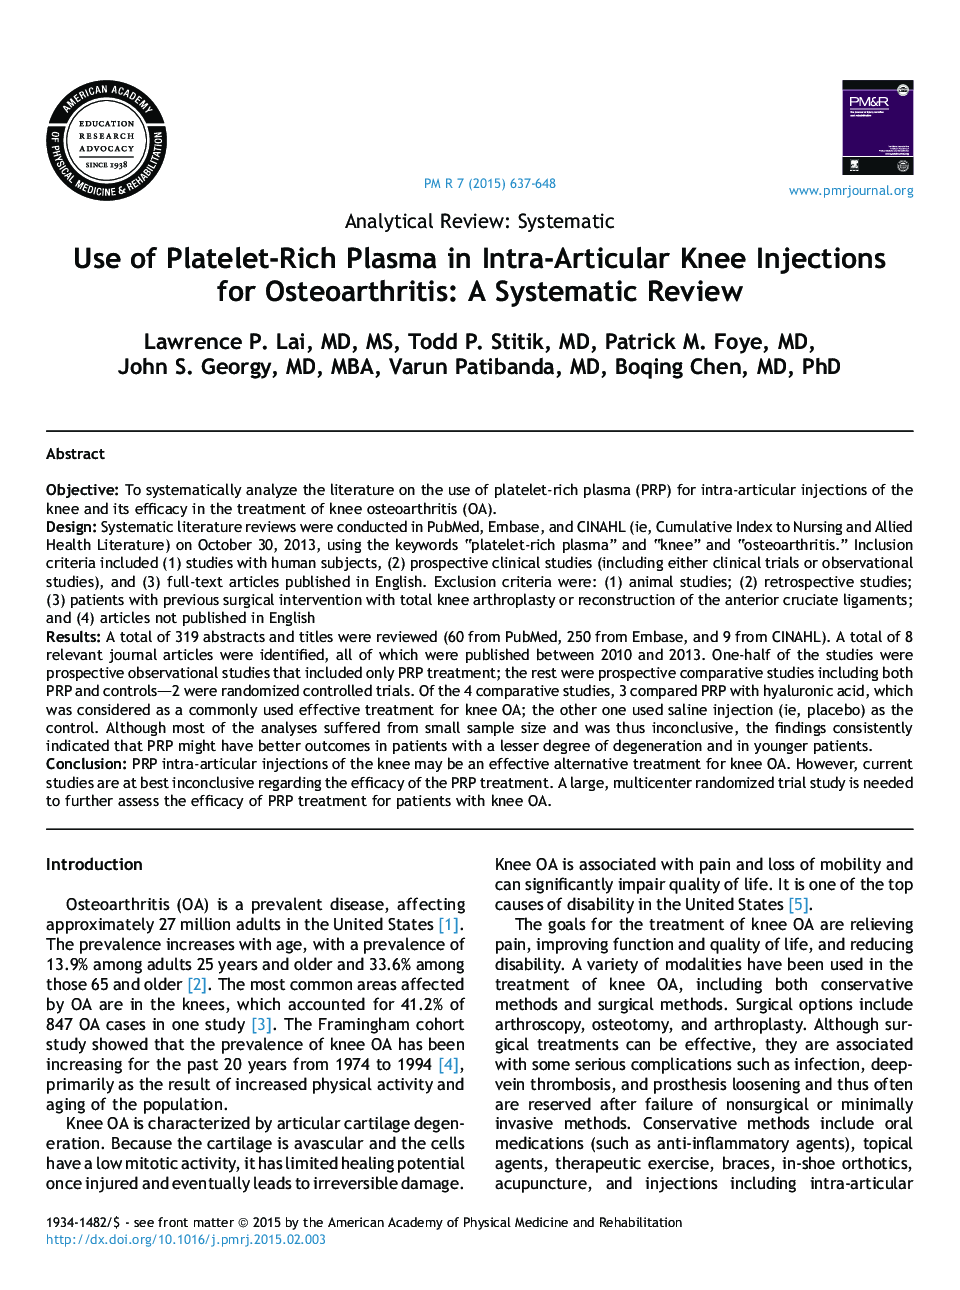 استفاده از پلاسما غنی از پلاکتی در تزریق داخل مفصلی زانو برای استئوآرتریت: بررسی سیستماتیک 